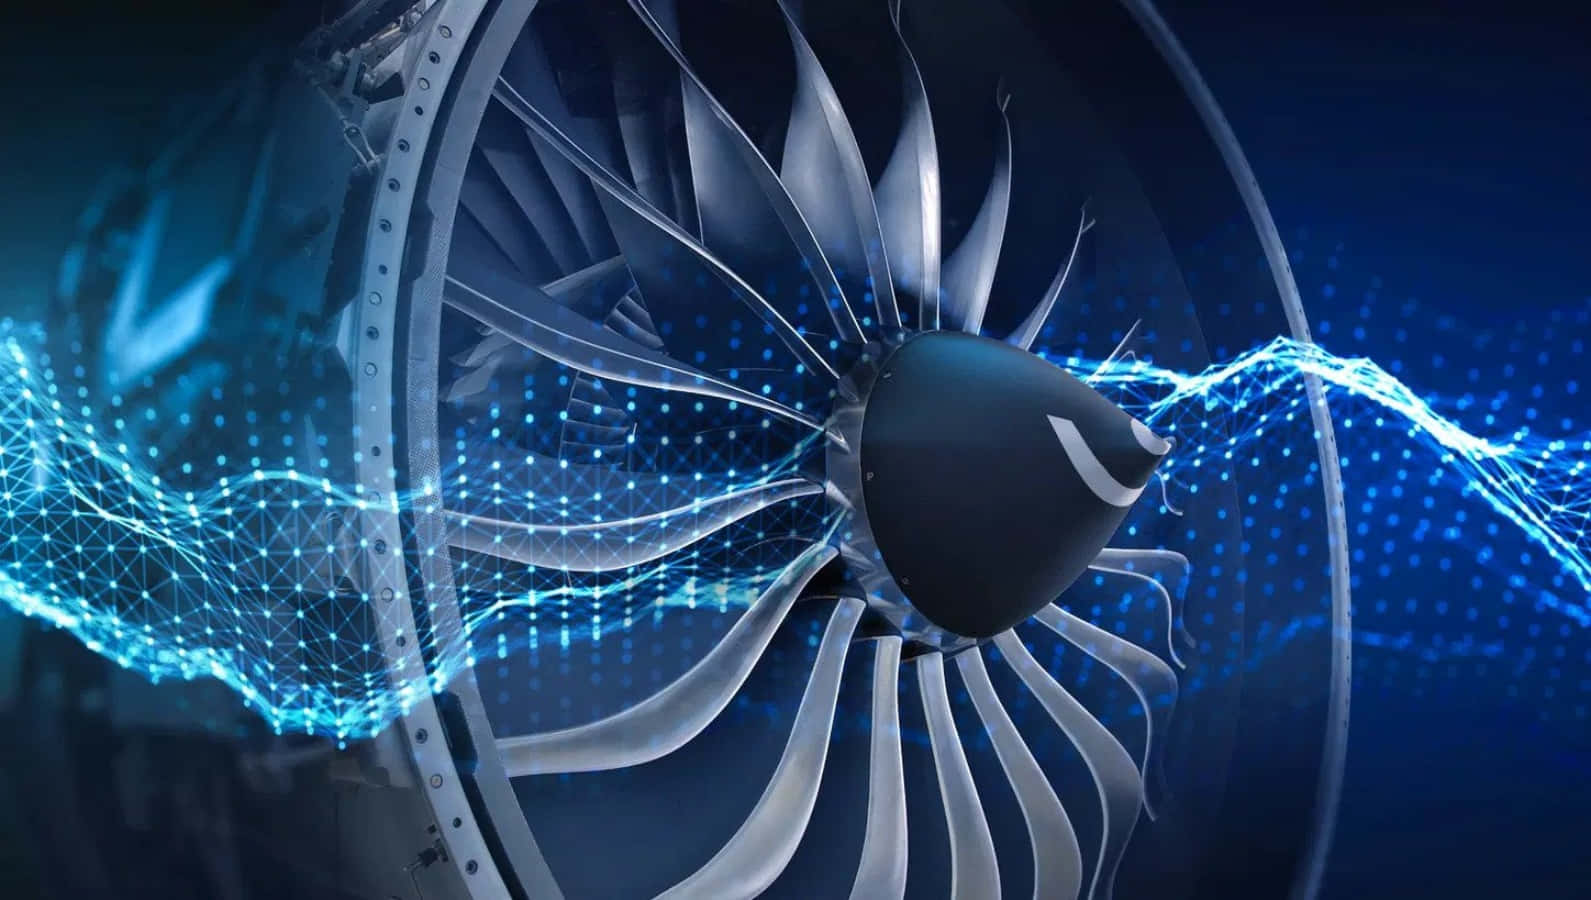 Motorde Avión Potente En Acción | Reacción De Un Motor De Avión Potente Fondo de pantalla